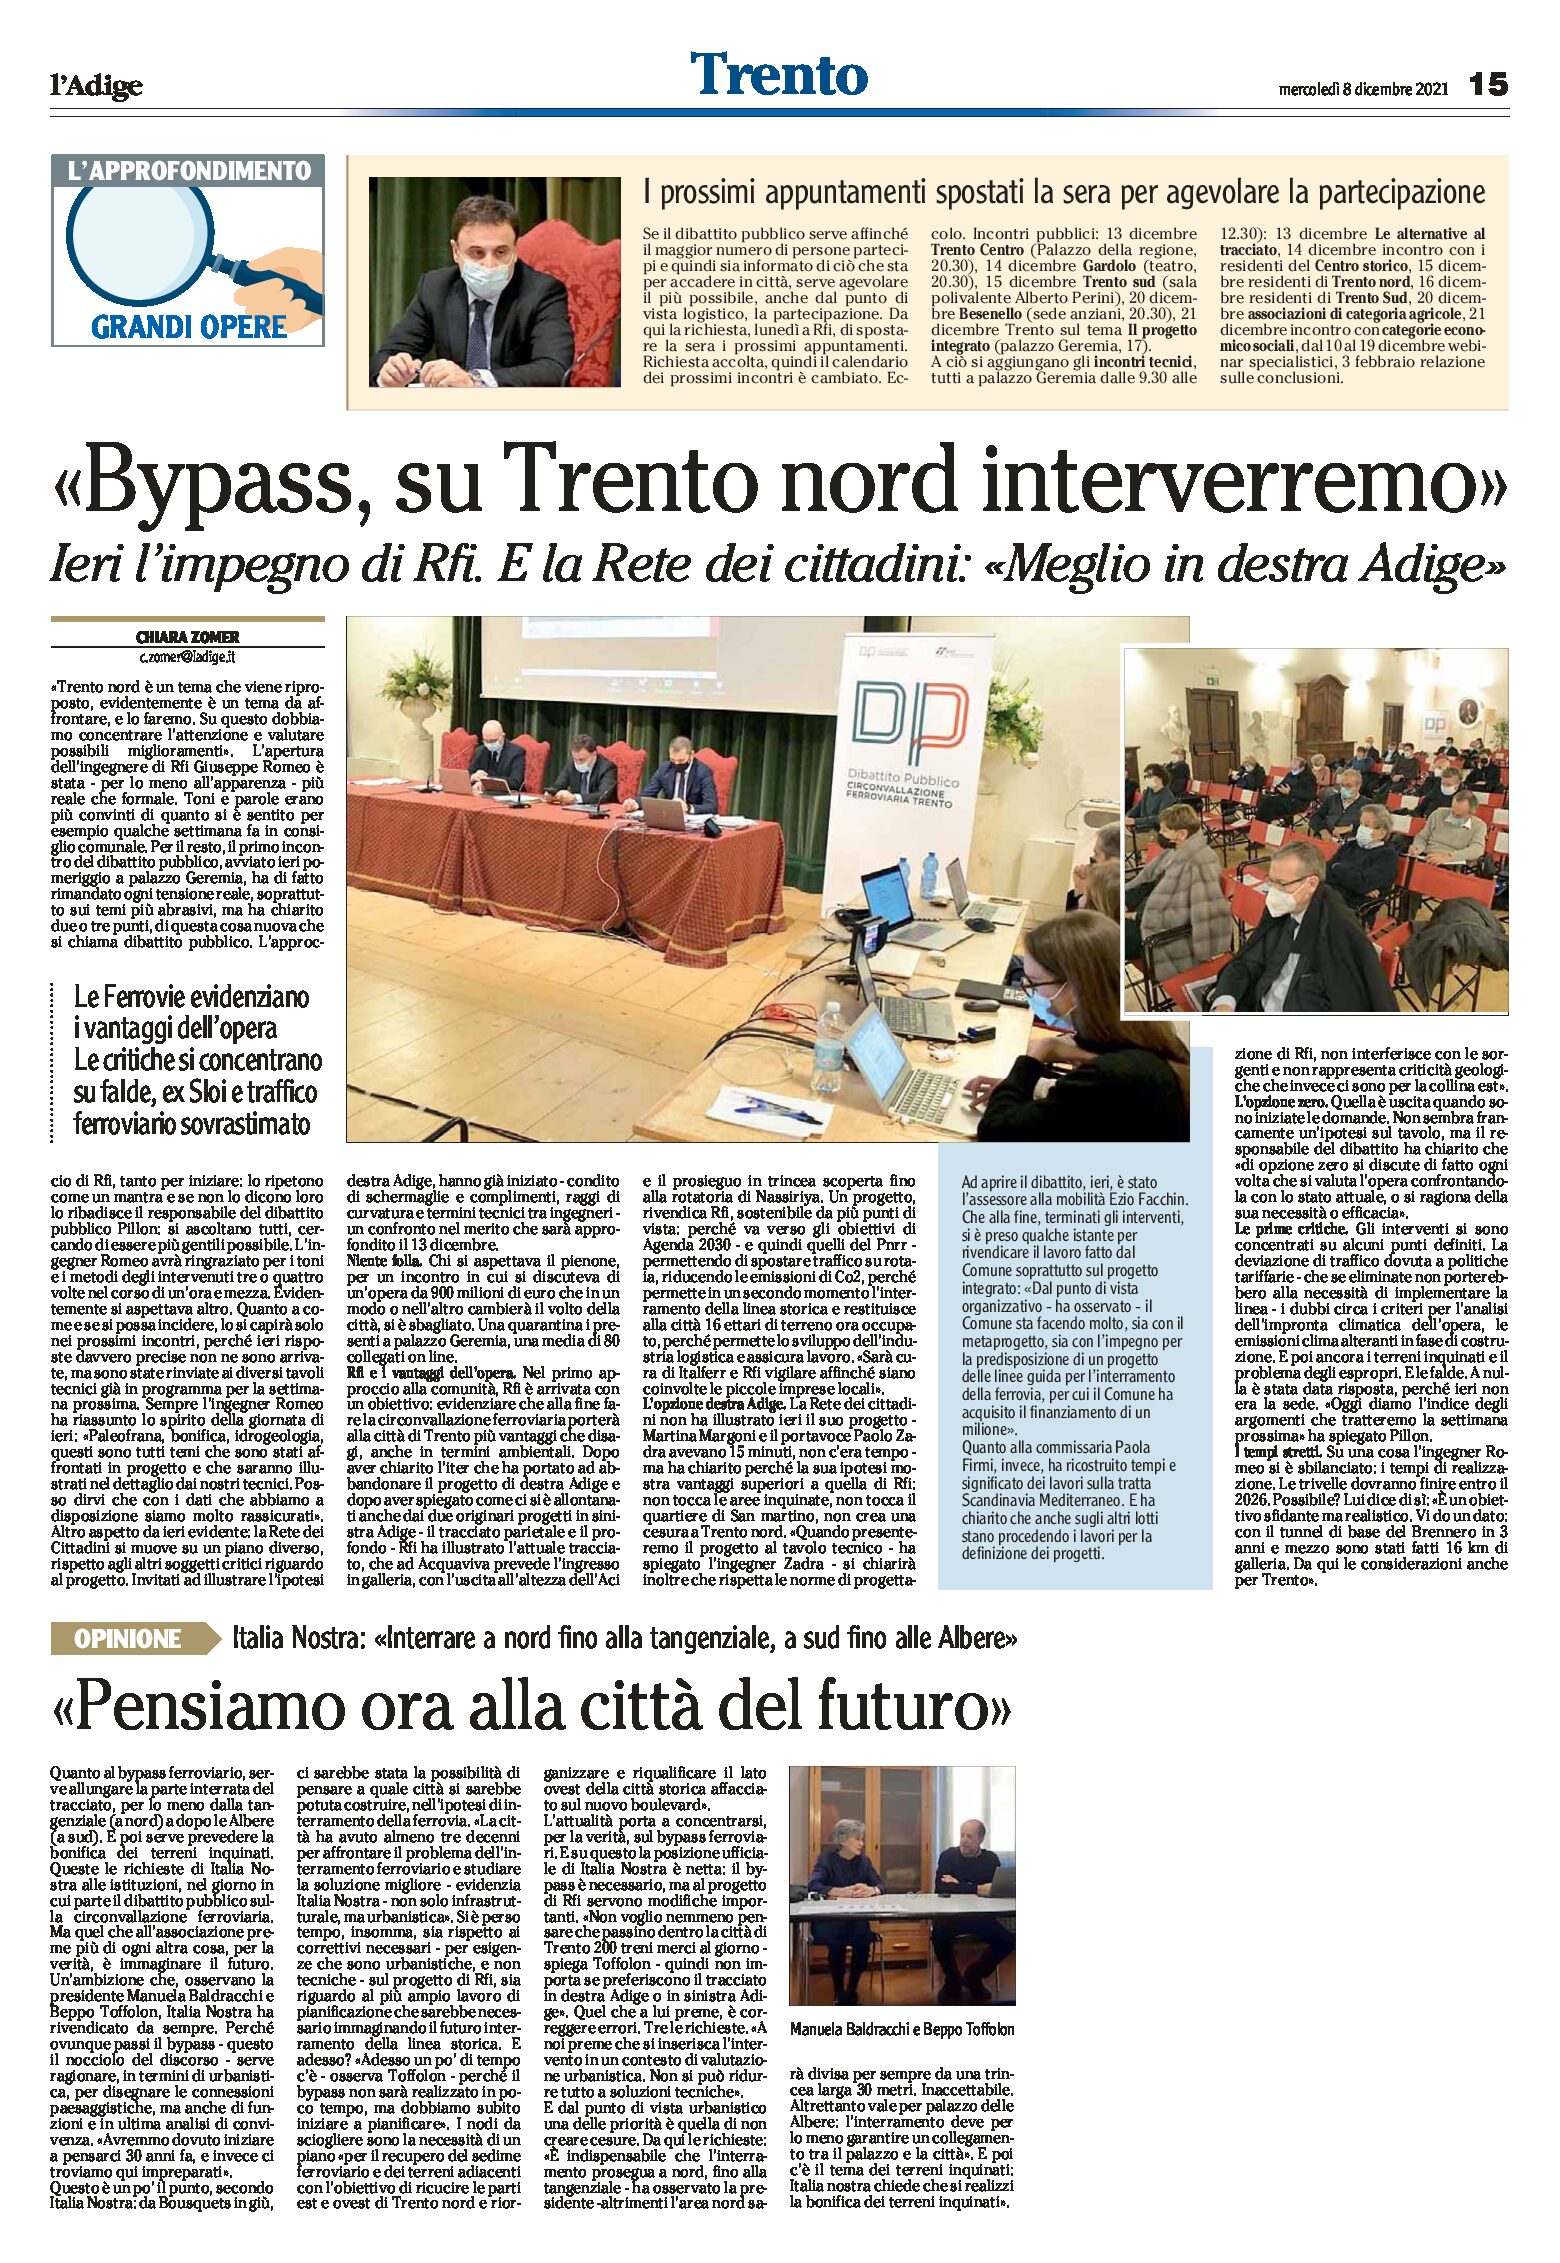 Trento, bypass: Italia Nostra “pensiamo ora alla città del futuro”